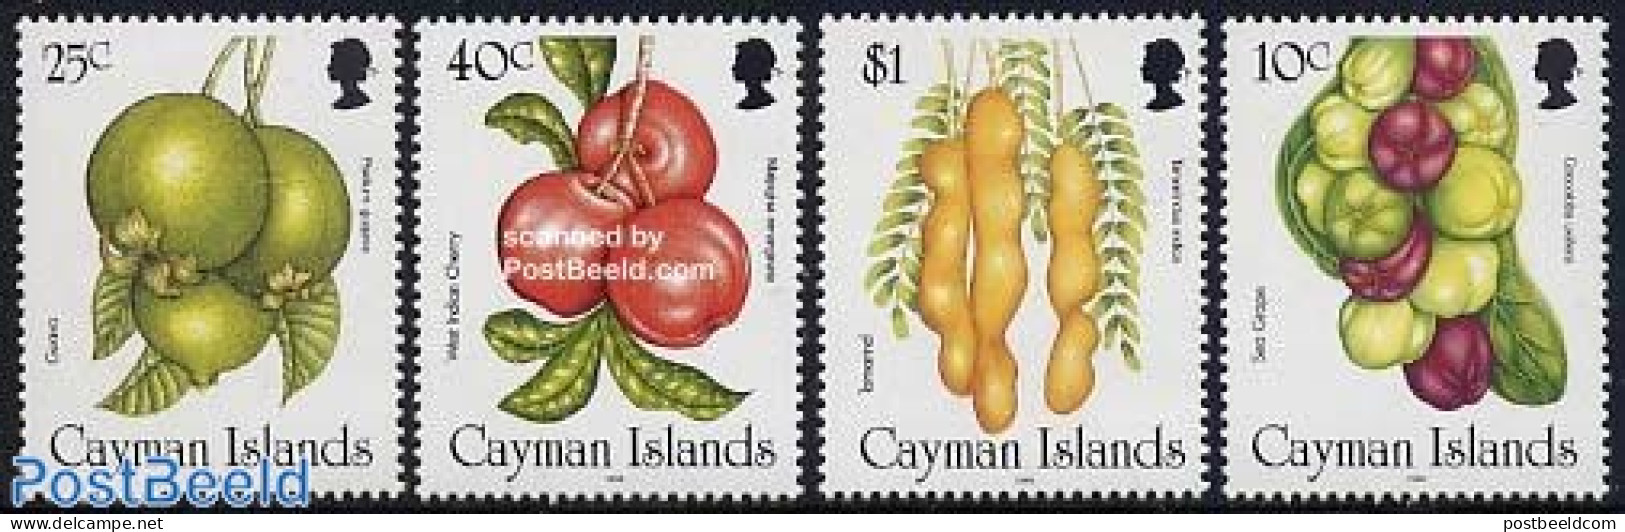 Cayman Islands 1996 Fruits 4v, Mint NH, Nature - Fruit - Obst & Früchte